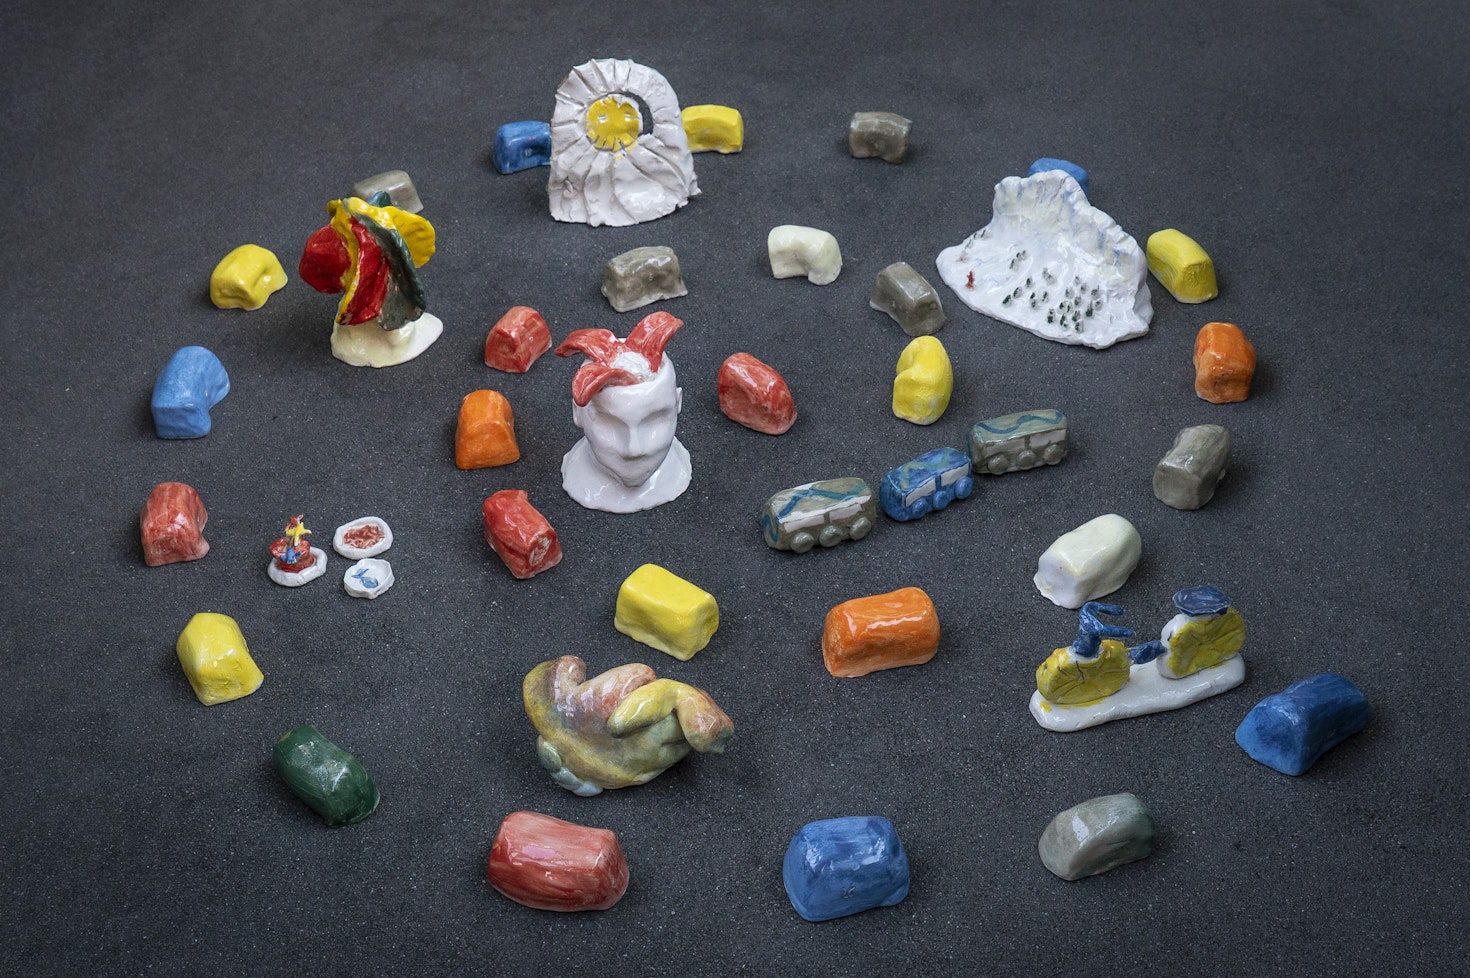 MyBZ Creative Toolkit: Ceramic objects designed to represent the city of Bolzano.